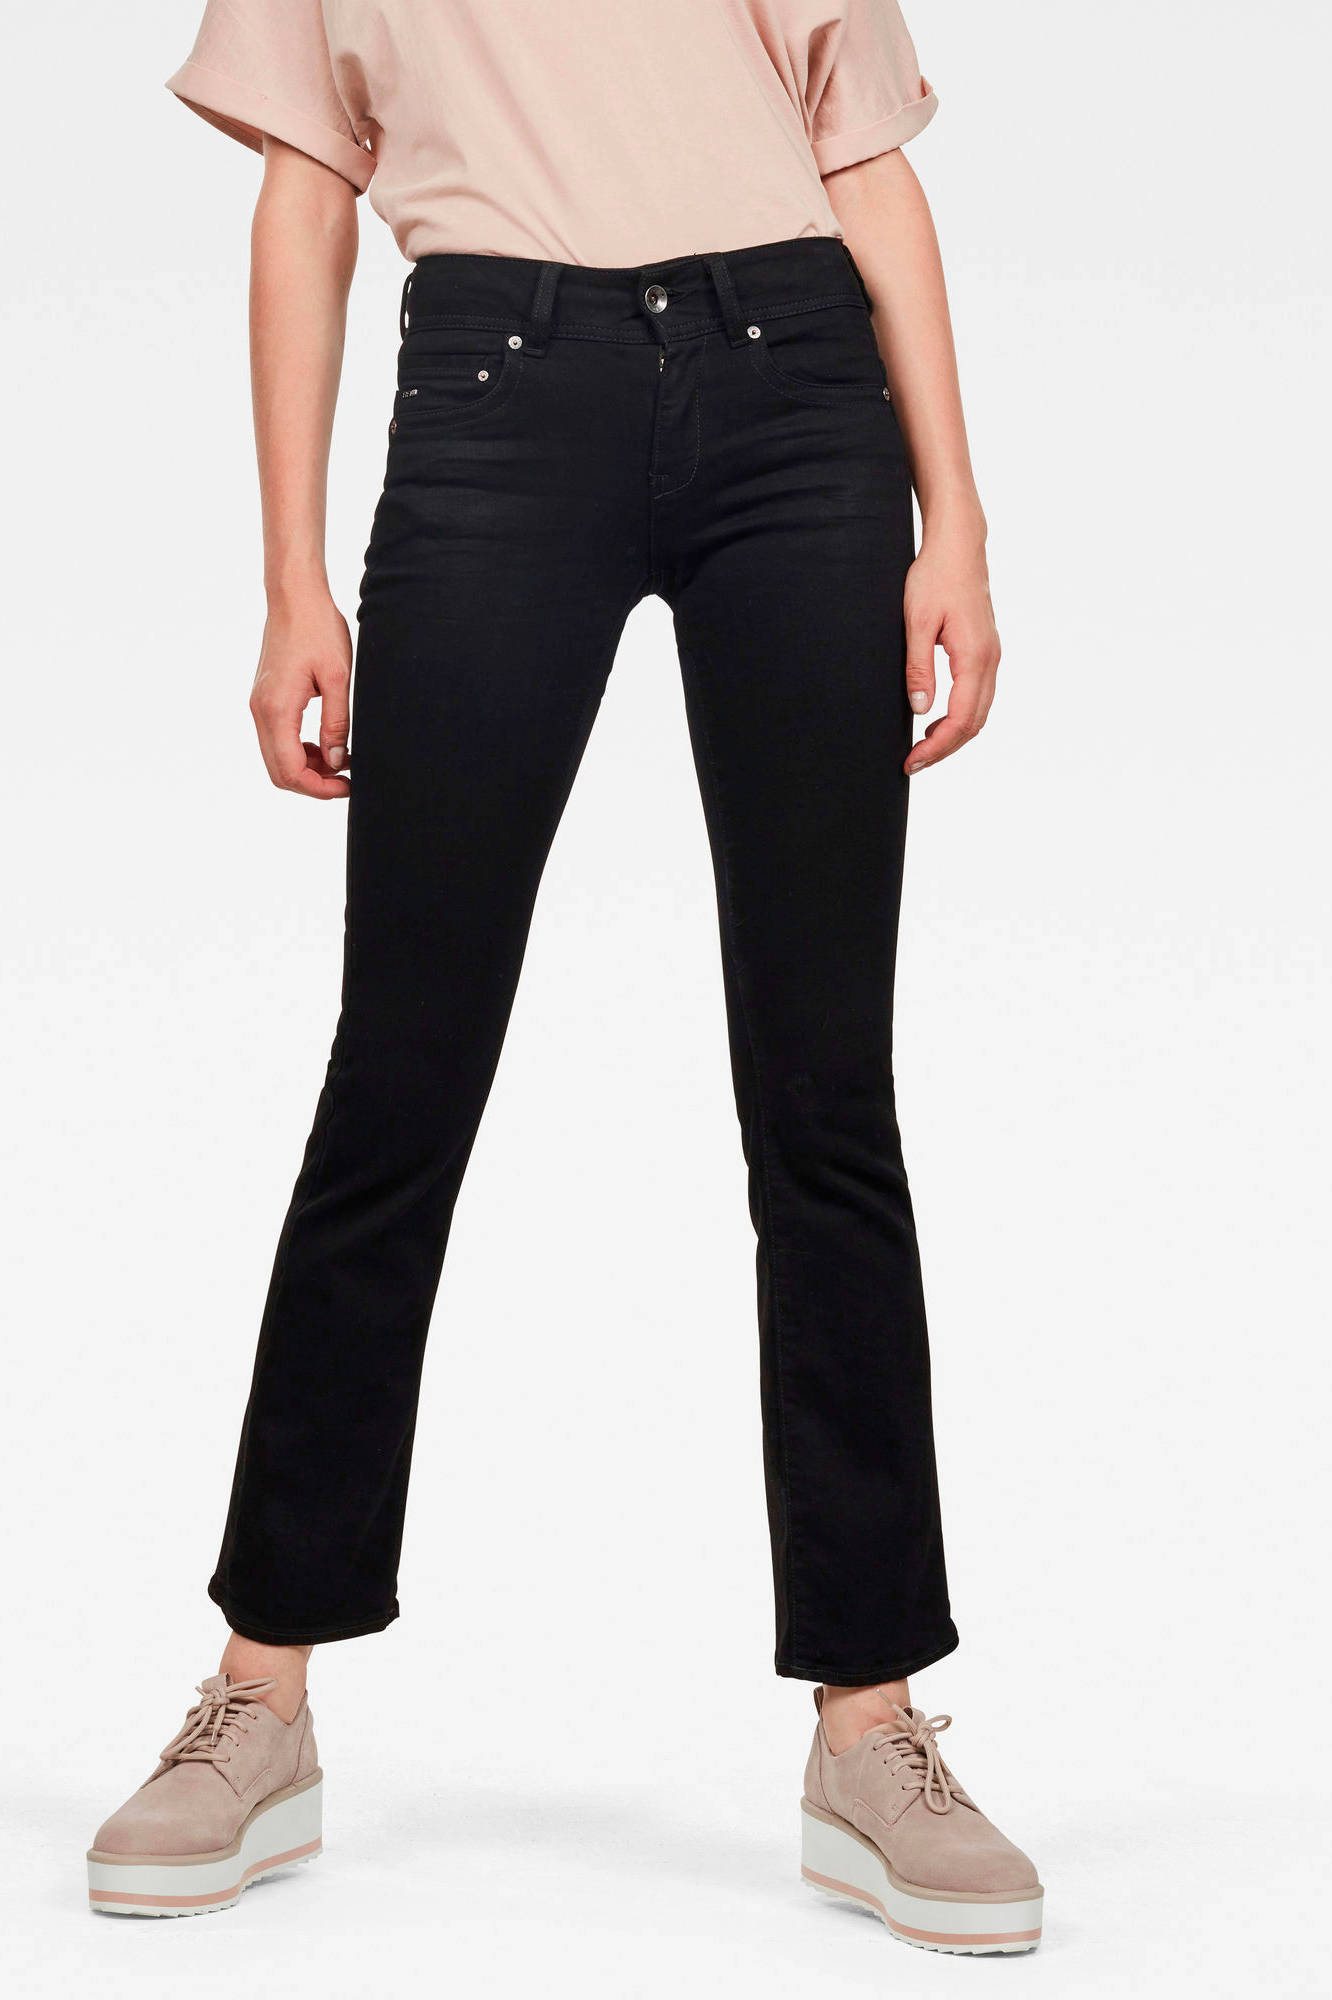 G-Star RAW Katoen Midge Bootcut Jeans in het Zwart Dames Kleding voor voor Jeans voor Flared jeans 